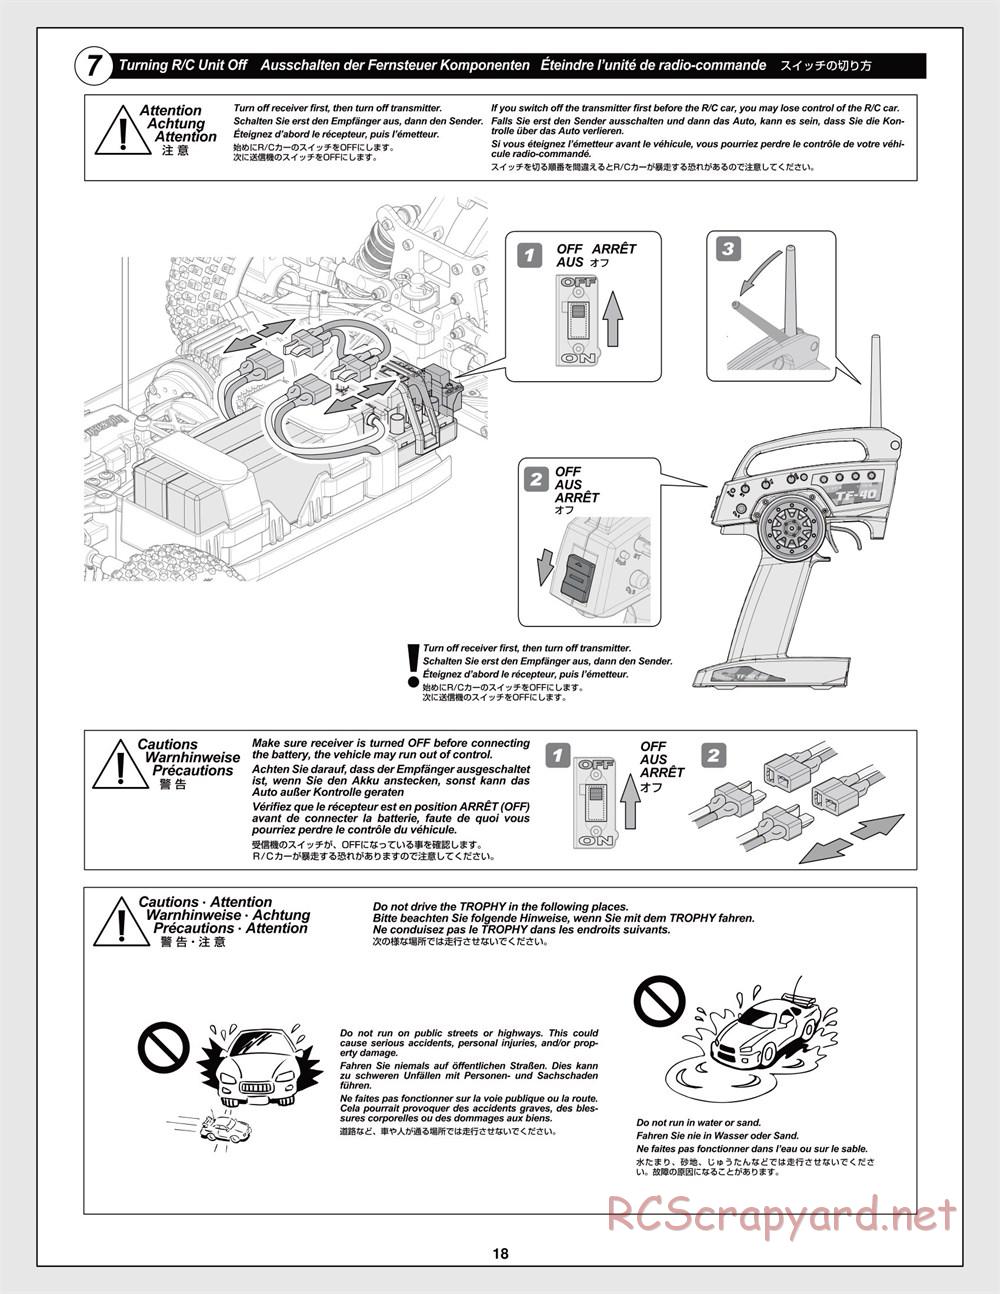 HPI - Trophy Flux Truggy - Manual - Page 18